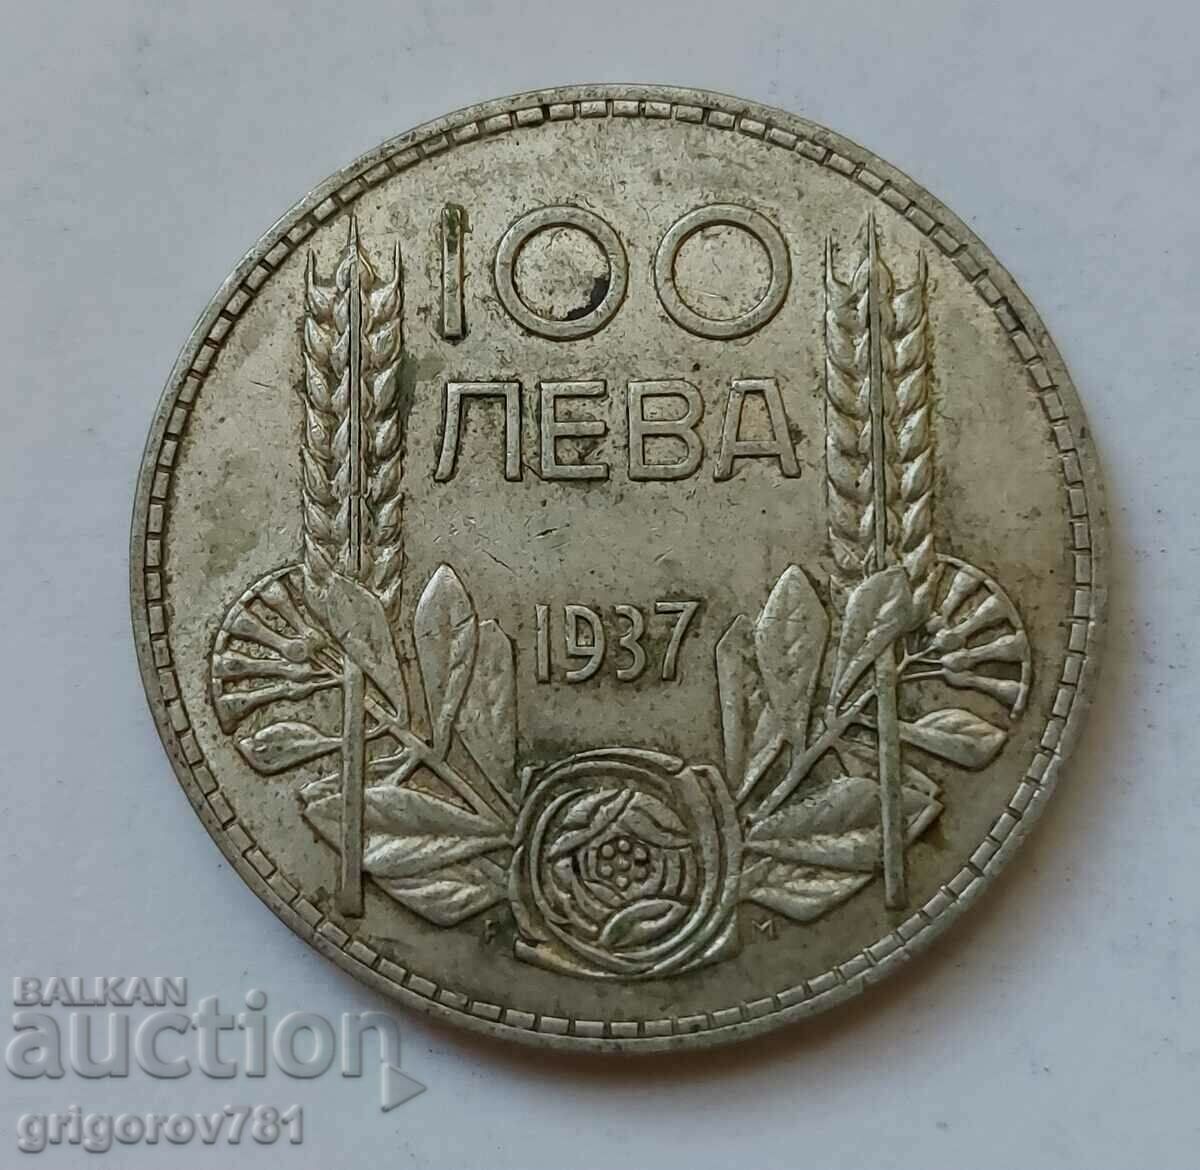 100 лева сребро България 1937 -  сребърна монета #91